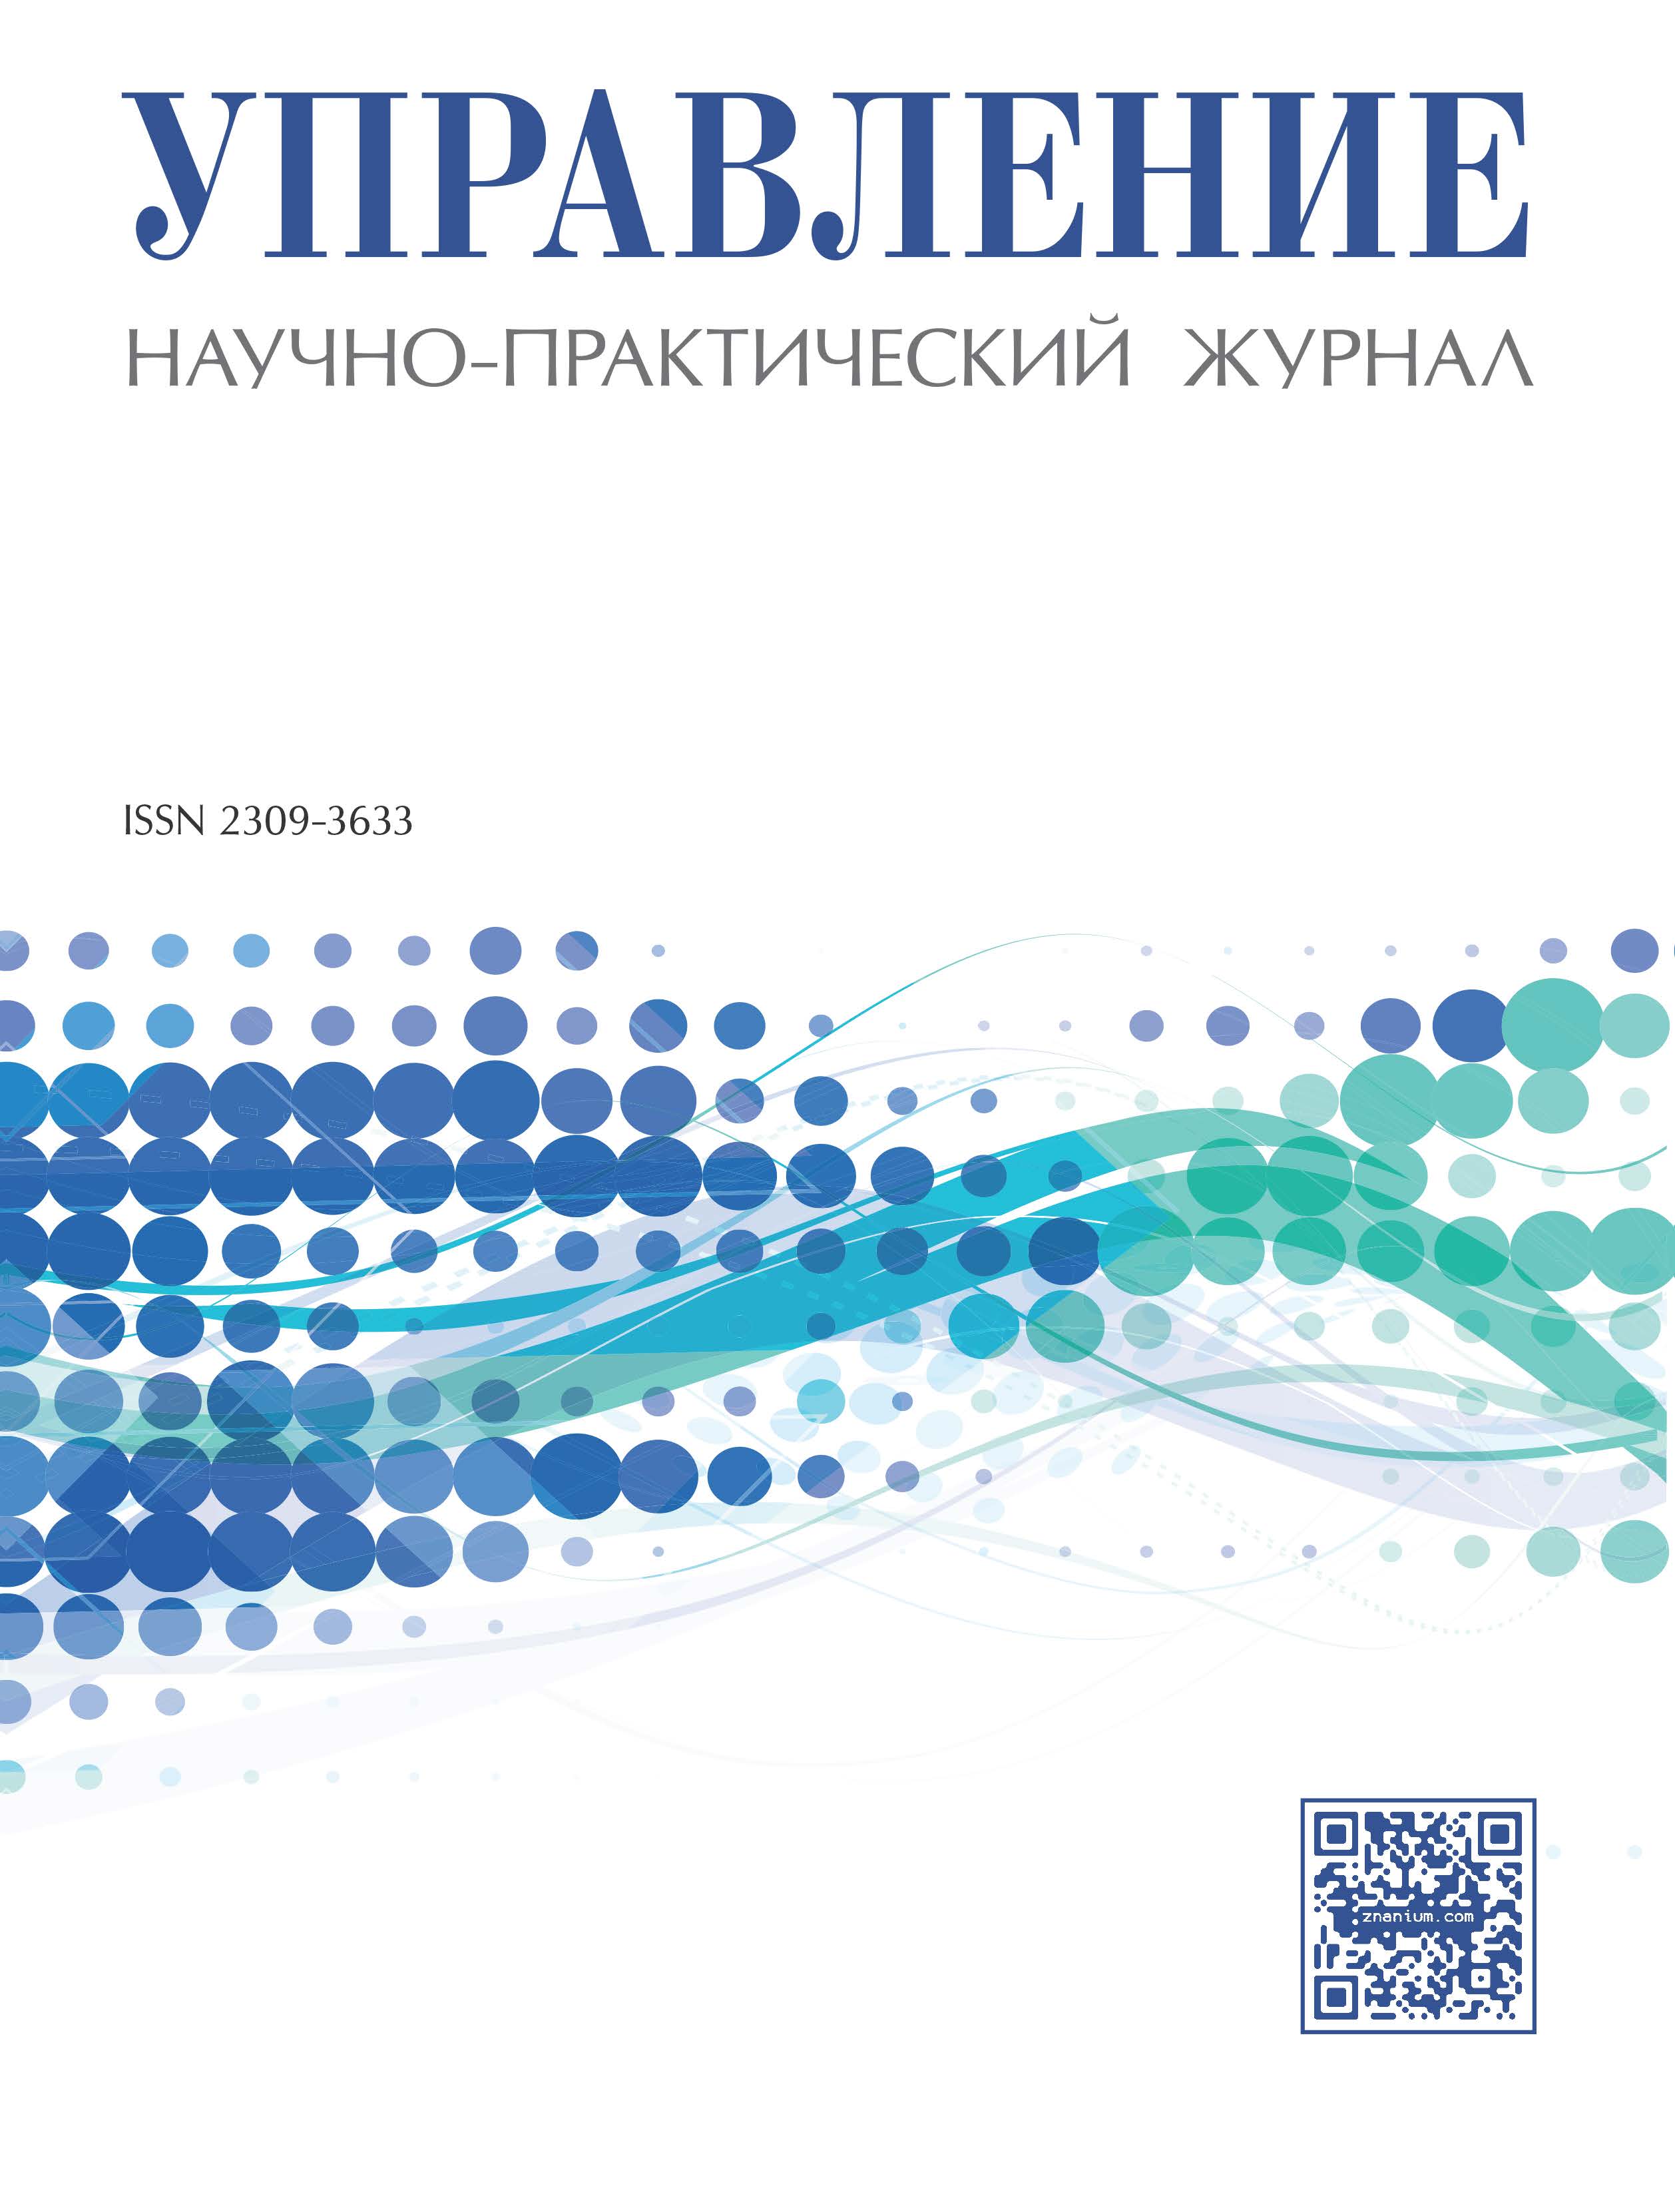             Проблематика, задачи и перспективы развития обучения в области корпоративного управления в высшей школе РФ
    